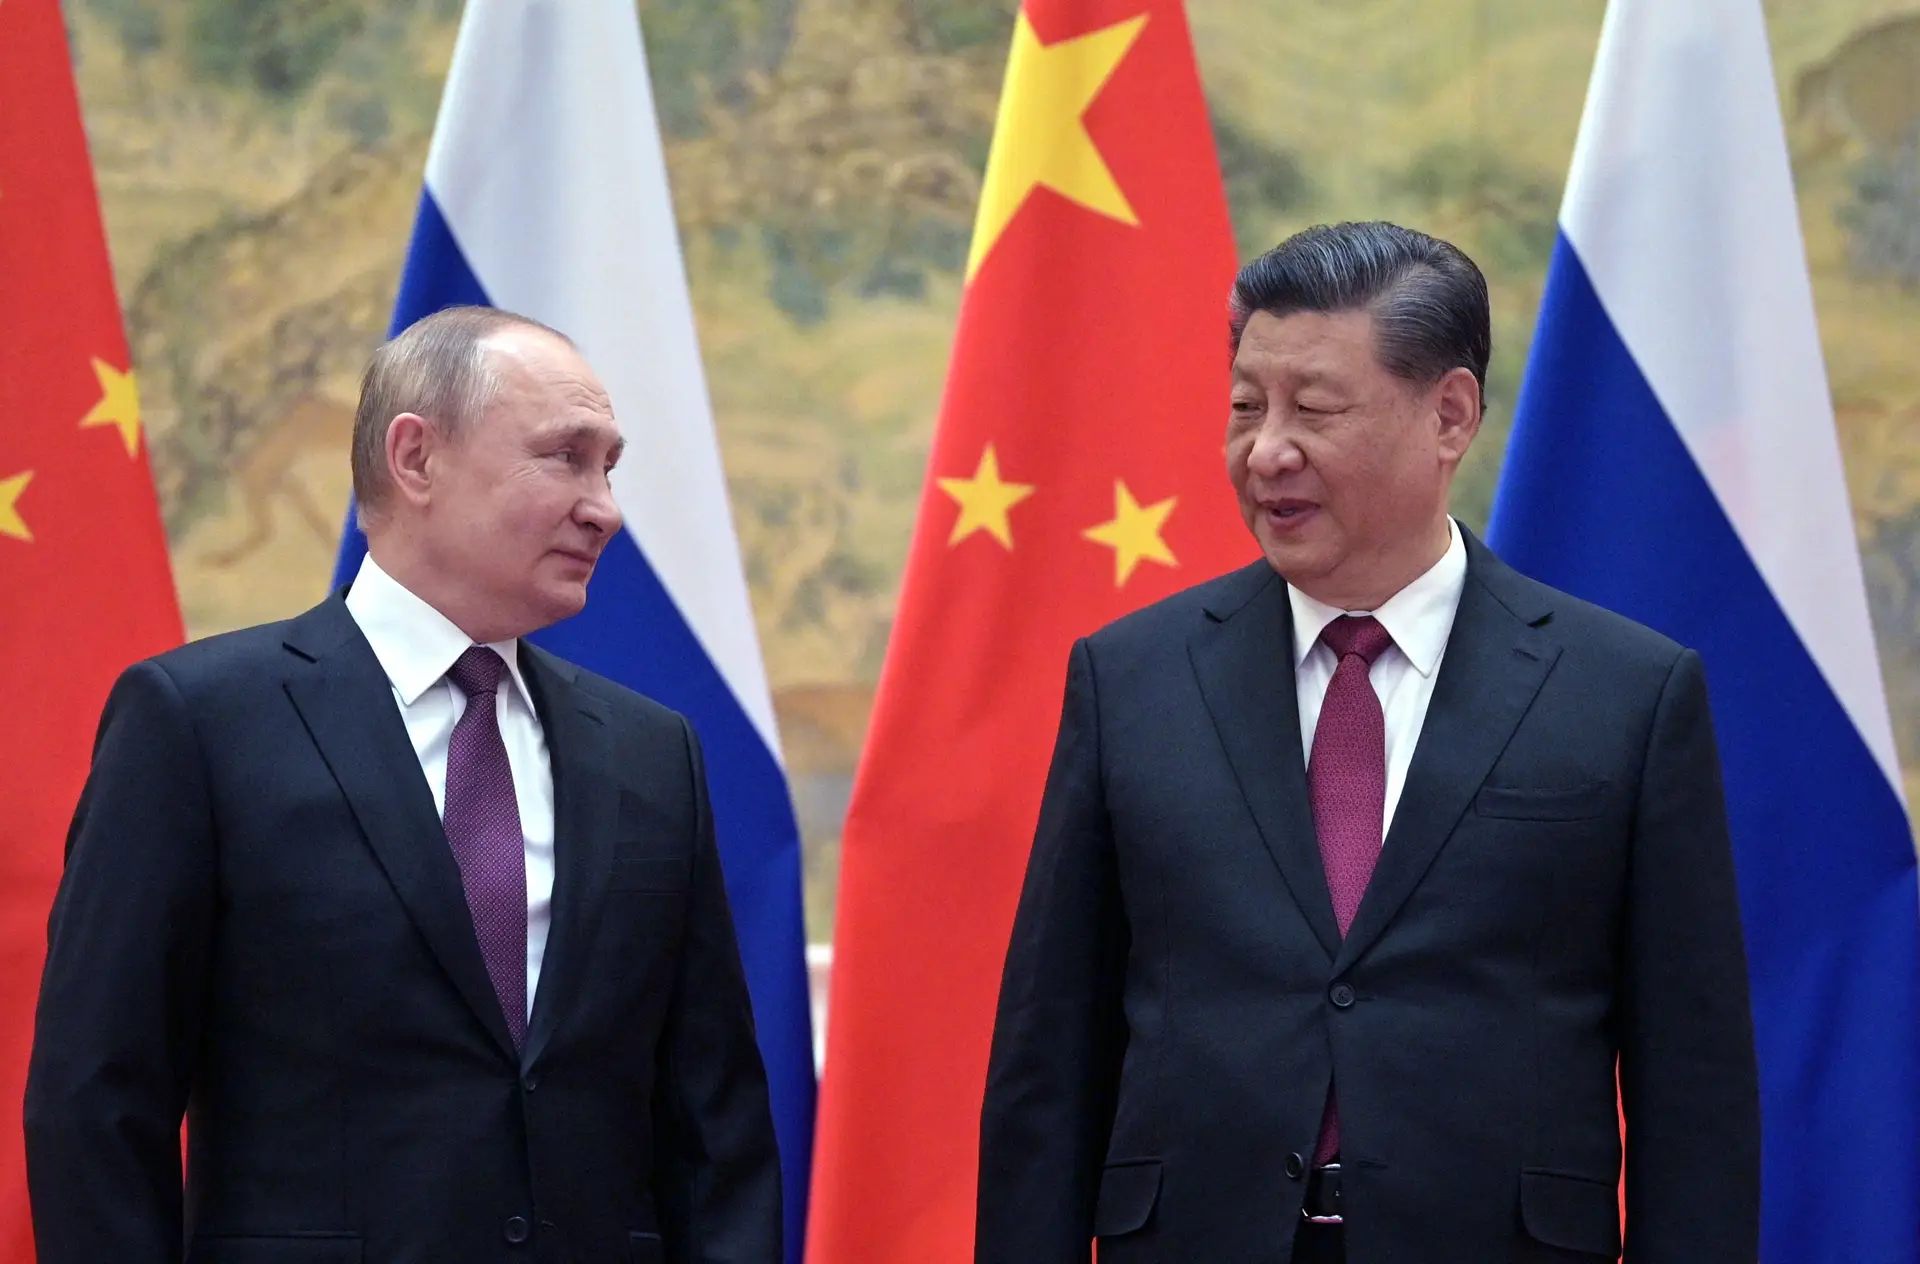 O tabuleiro geopolítico da Guerra na Ucrânia: “Tenho conversas com pessoas  no Pentágono e elas só dizem 'China, China, China', não 'Rússia'” - Expresso